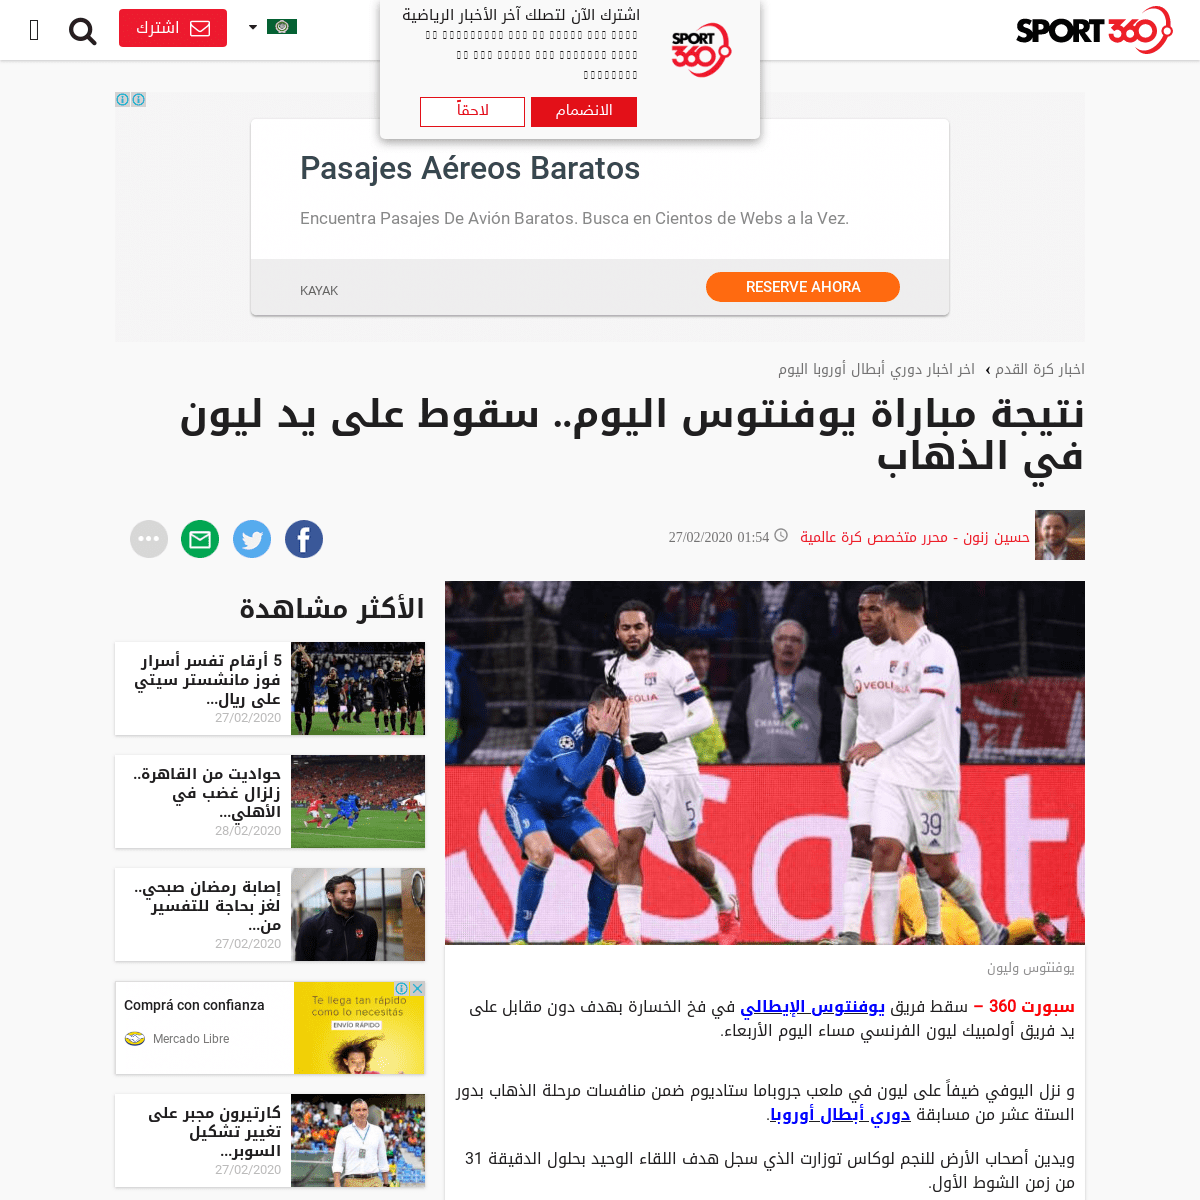 A complete backup of arabic.sport360.com/article/football/europeanfootball/910750/%D9%86%D8%AA%D9%8A%D8%AC%D8%A9-%D9%85%D8%A8%D8